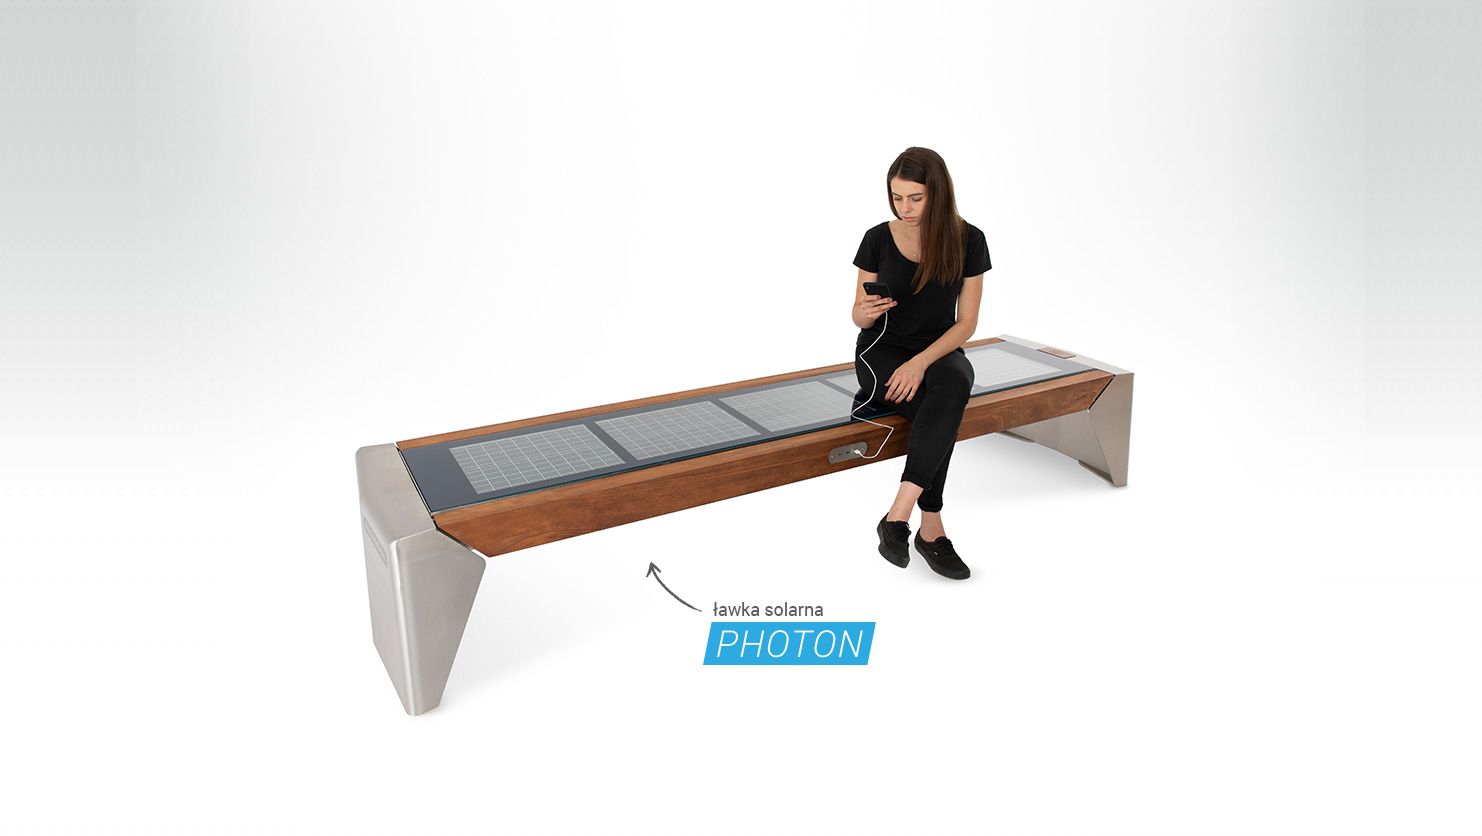 Photon to nowoczesna ławka miejska zasilana przez panele fotowoltaiczne posiadająca USB 3.0 fast charge, ładowarkę indukcyjną, Wi-Fi, pętlę indukcyjną, głośnik i panel dźwiękowy oraz oświetlenie LED